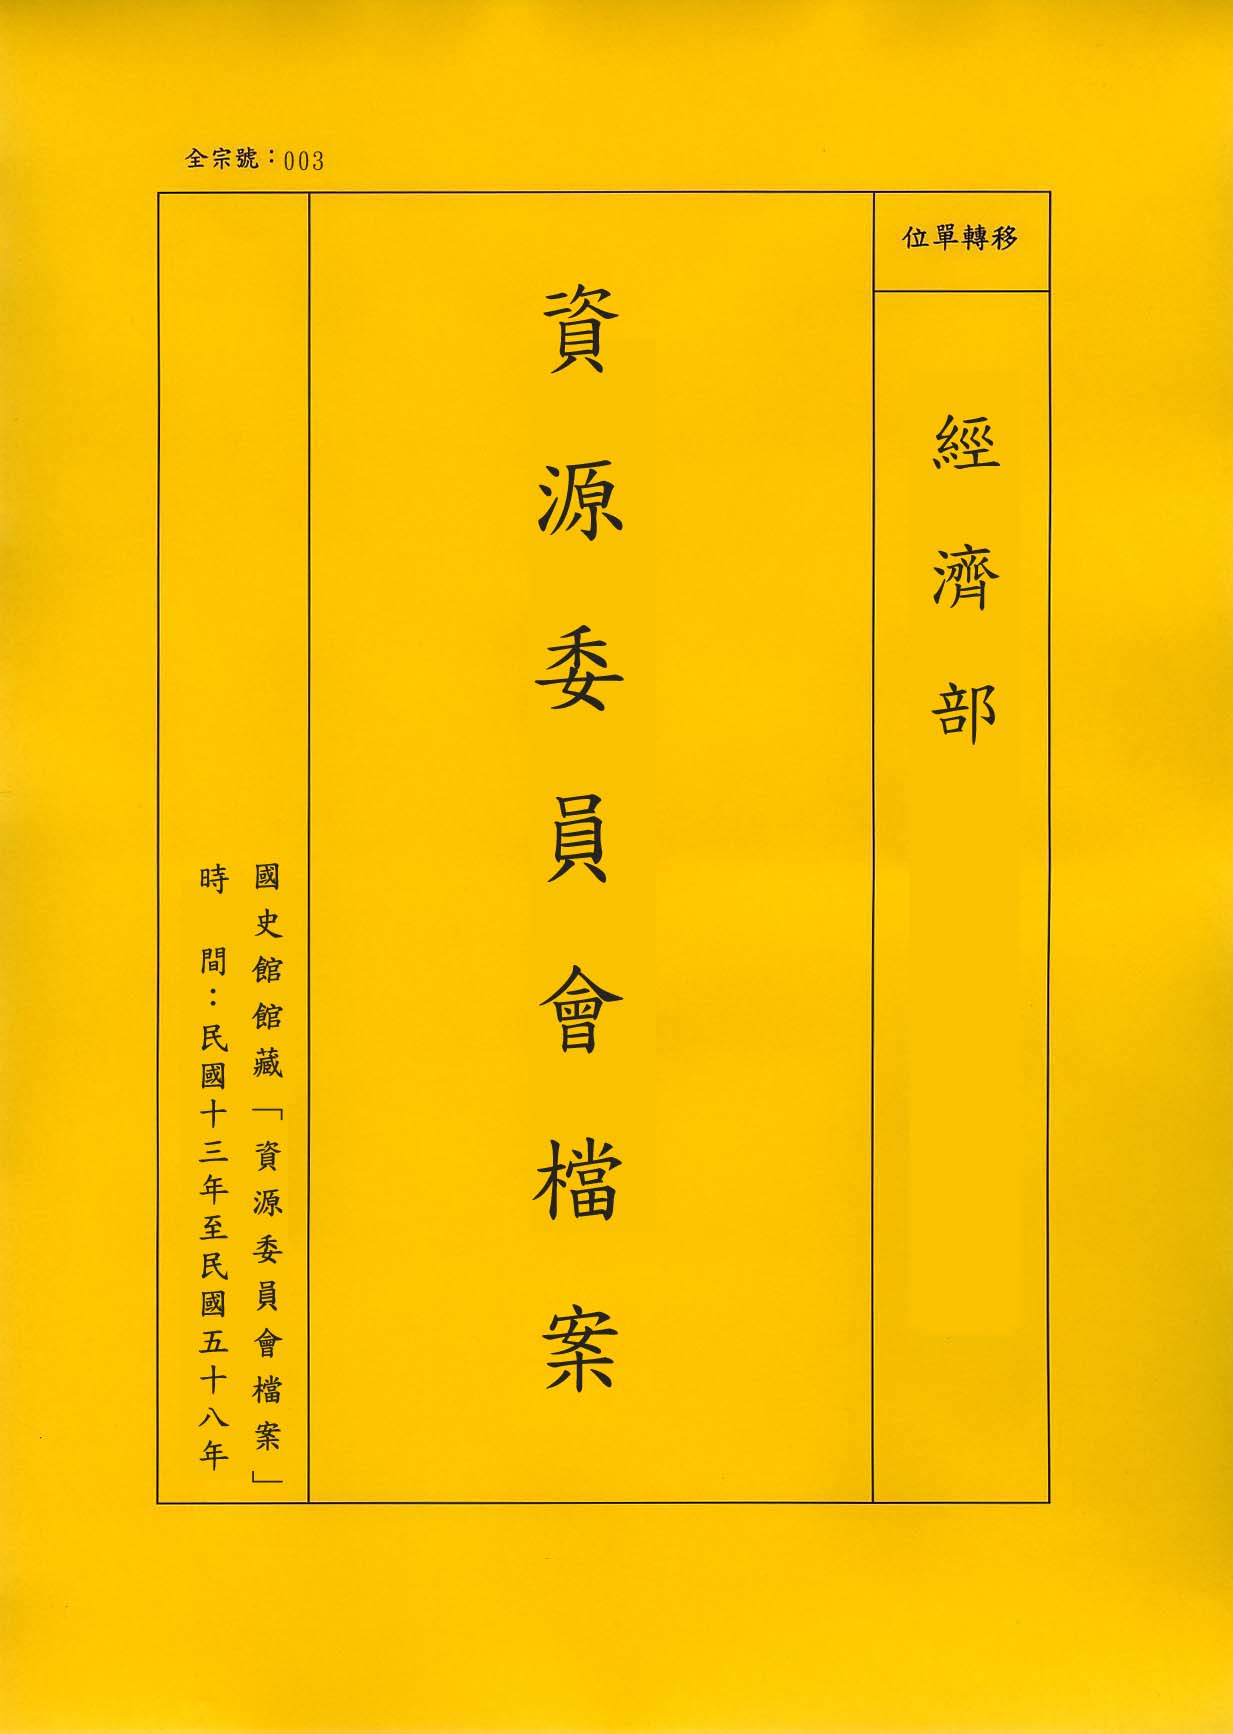 卷名:臺灣電力資料Information of Taiwan Power(003-020200-0374)